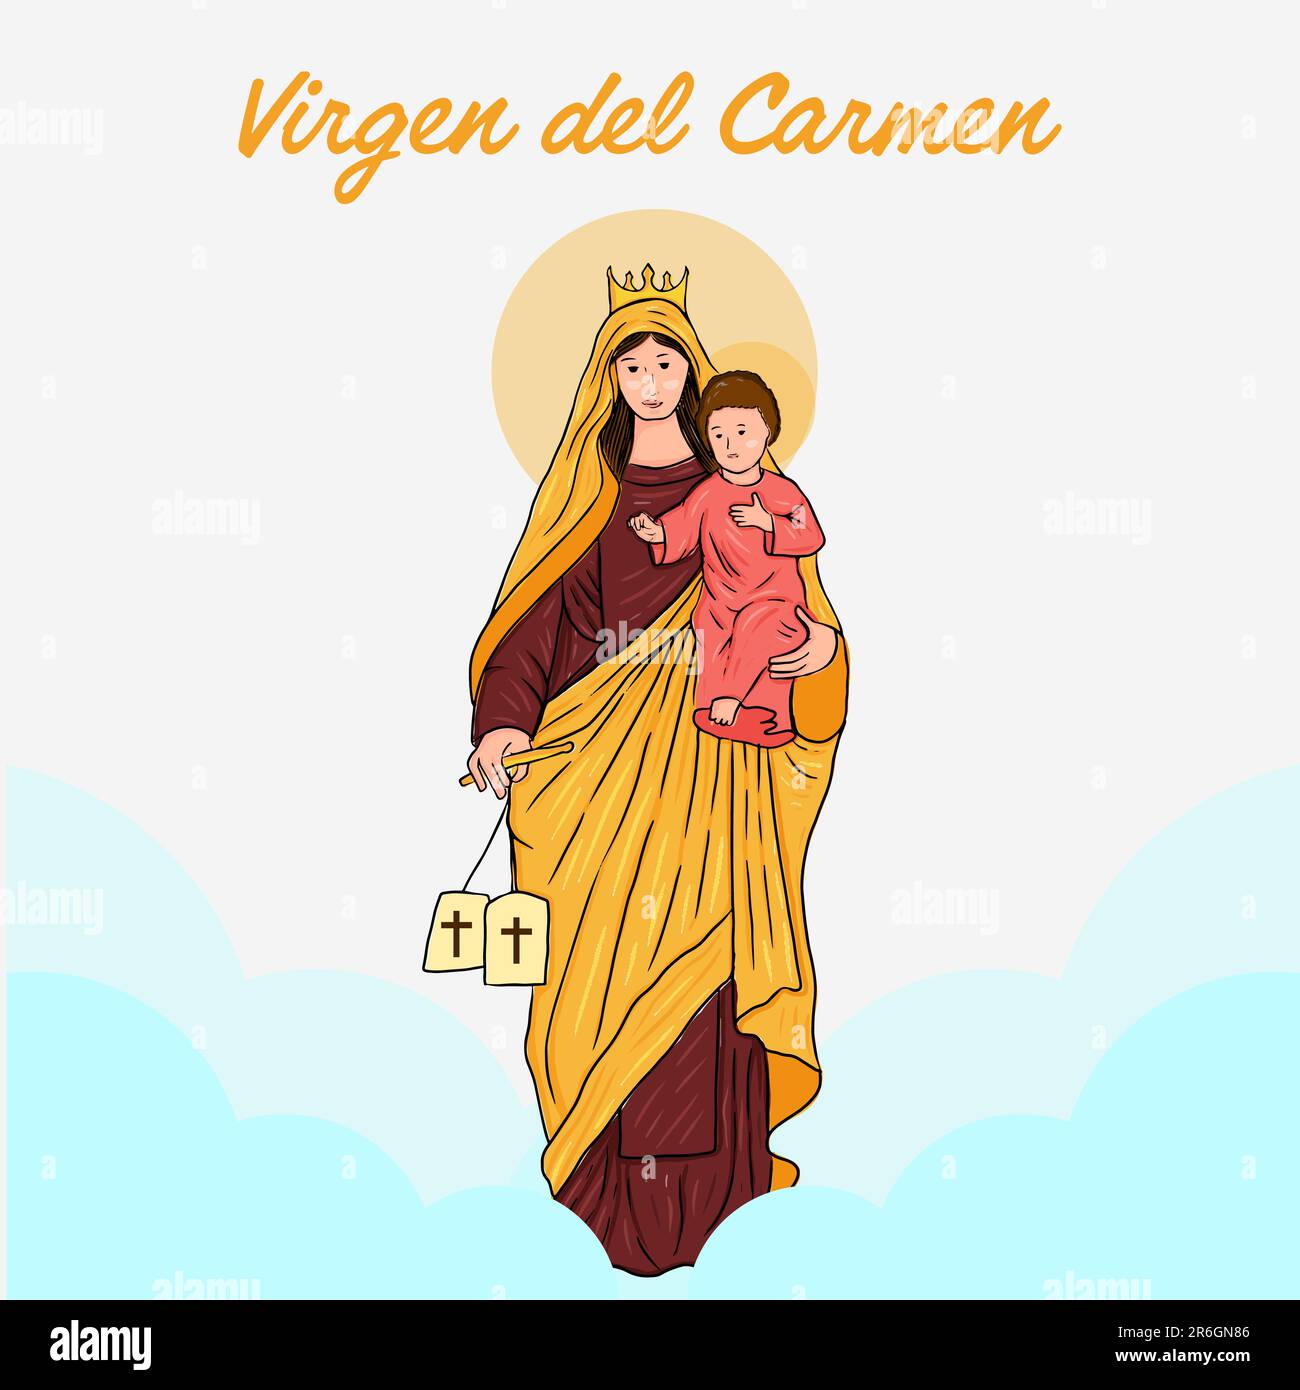 vector virgen del carmen hand drawn illustration Stock Vector